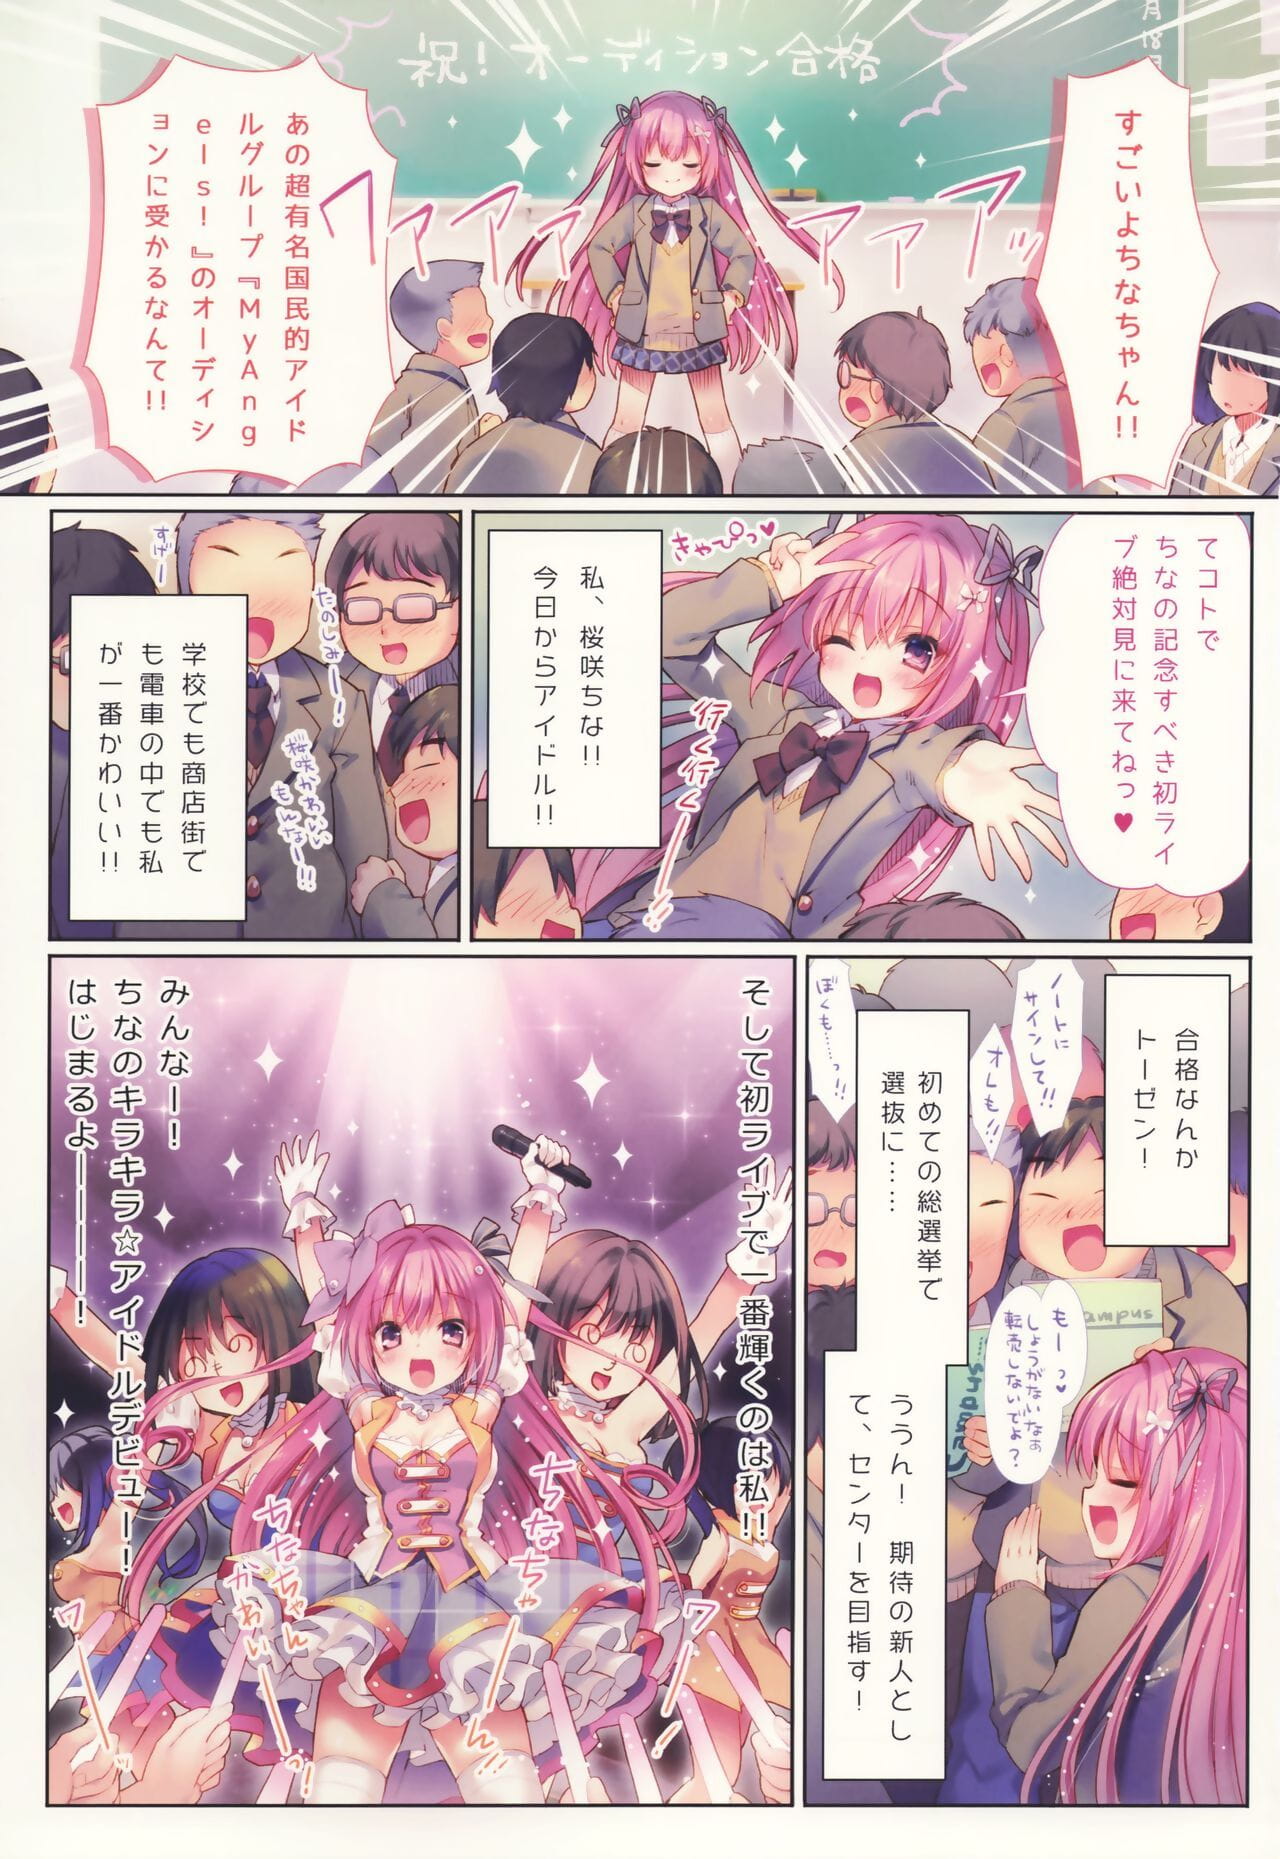 kirakira hamepako Idolo debutto page 1